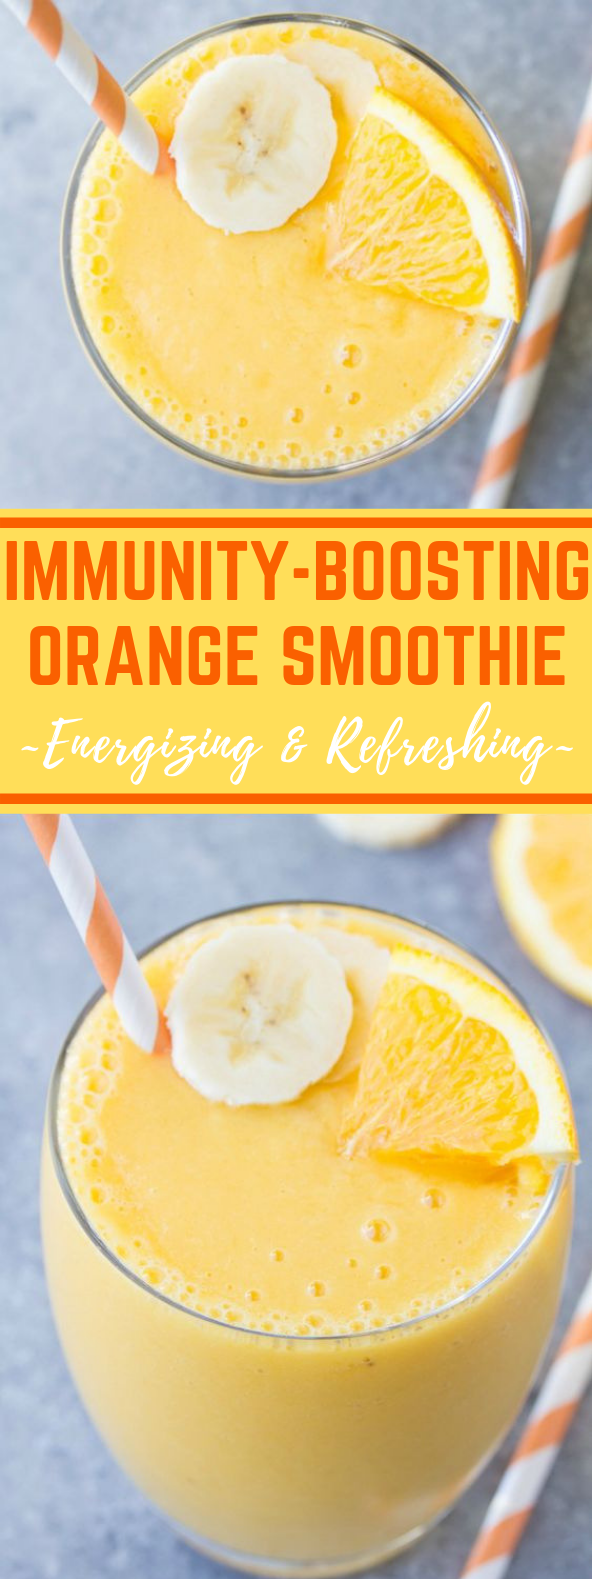 Immunity Boosting Orange Smoothie #healthydrink #smoothies